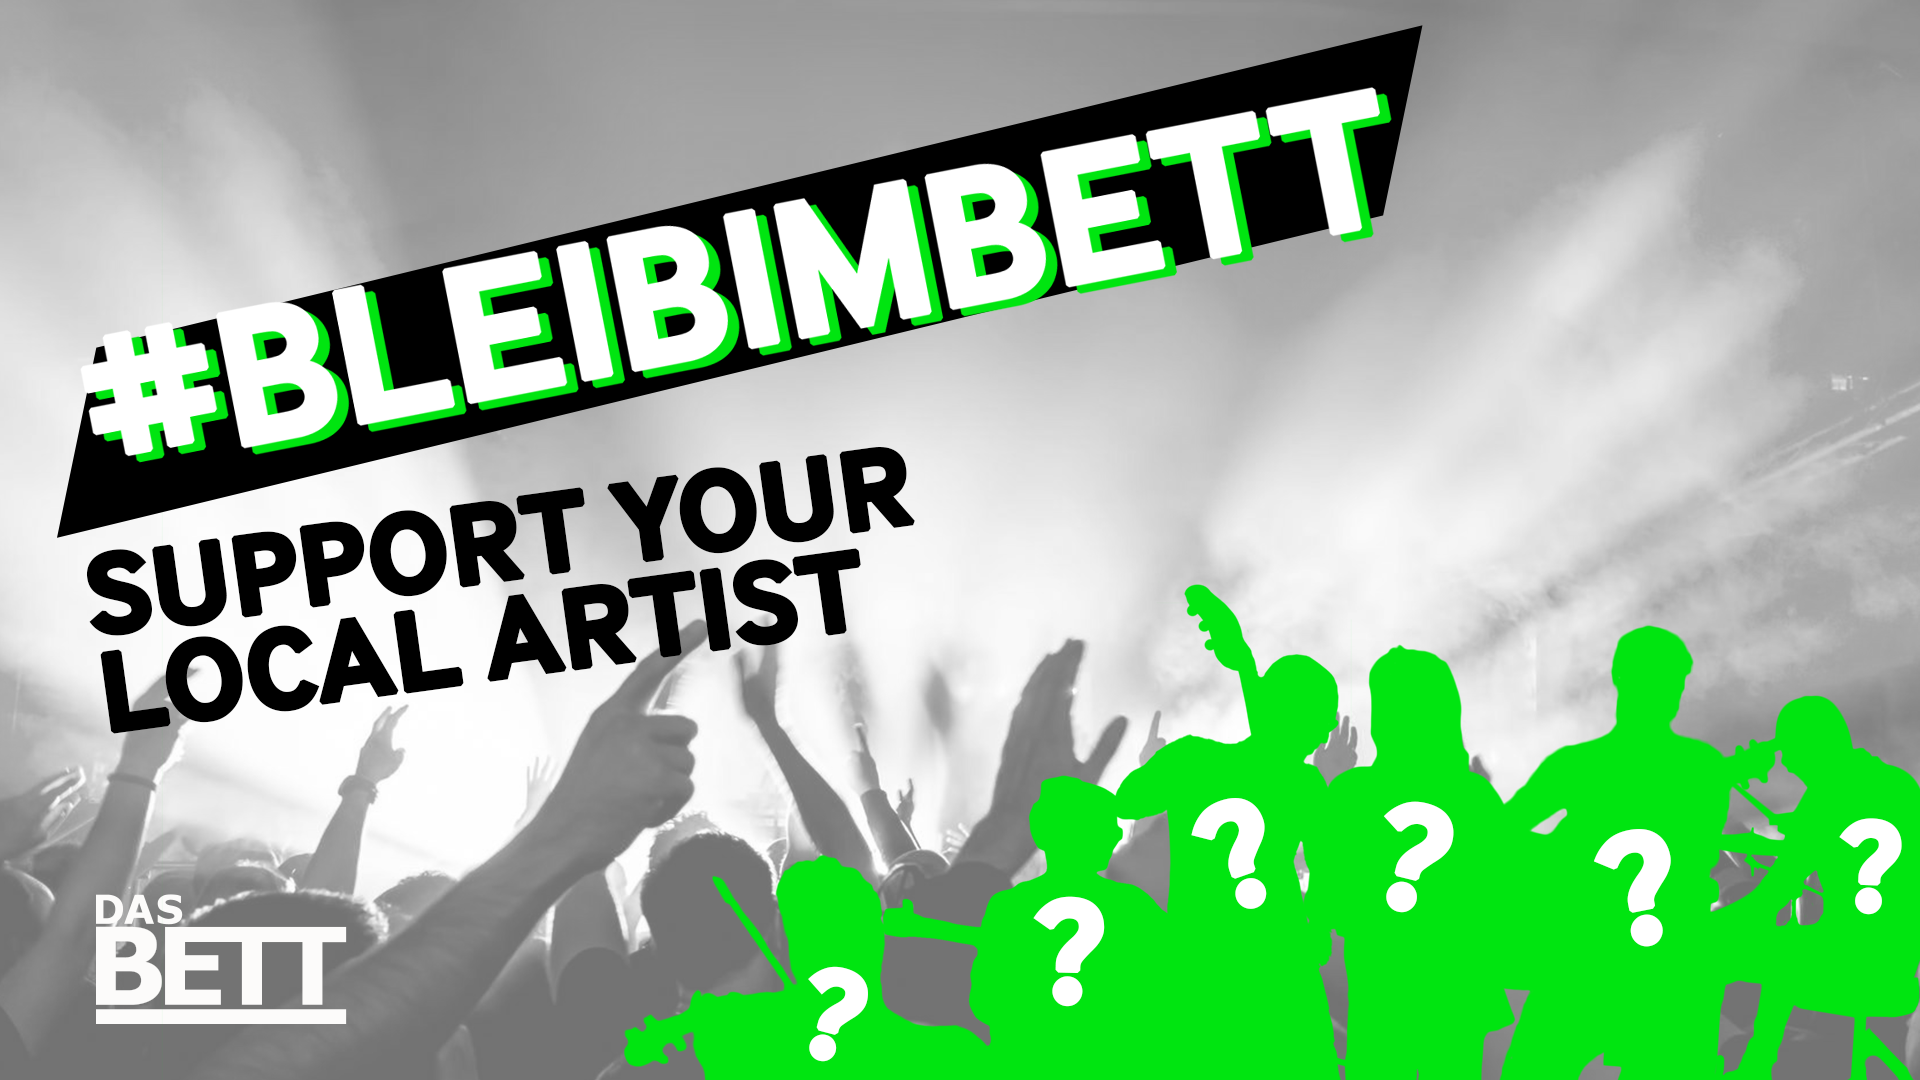 #BLEIBIMBETT – Support Your Local Artist